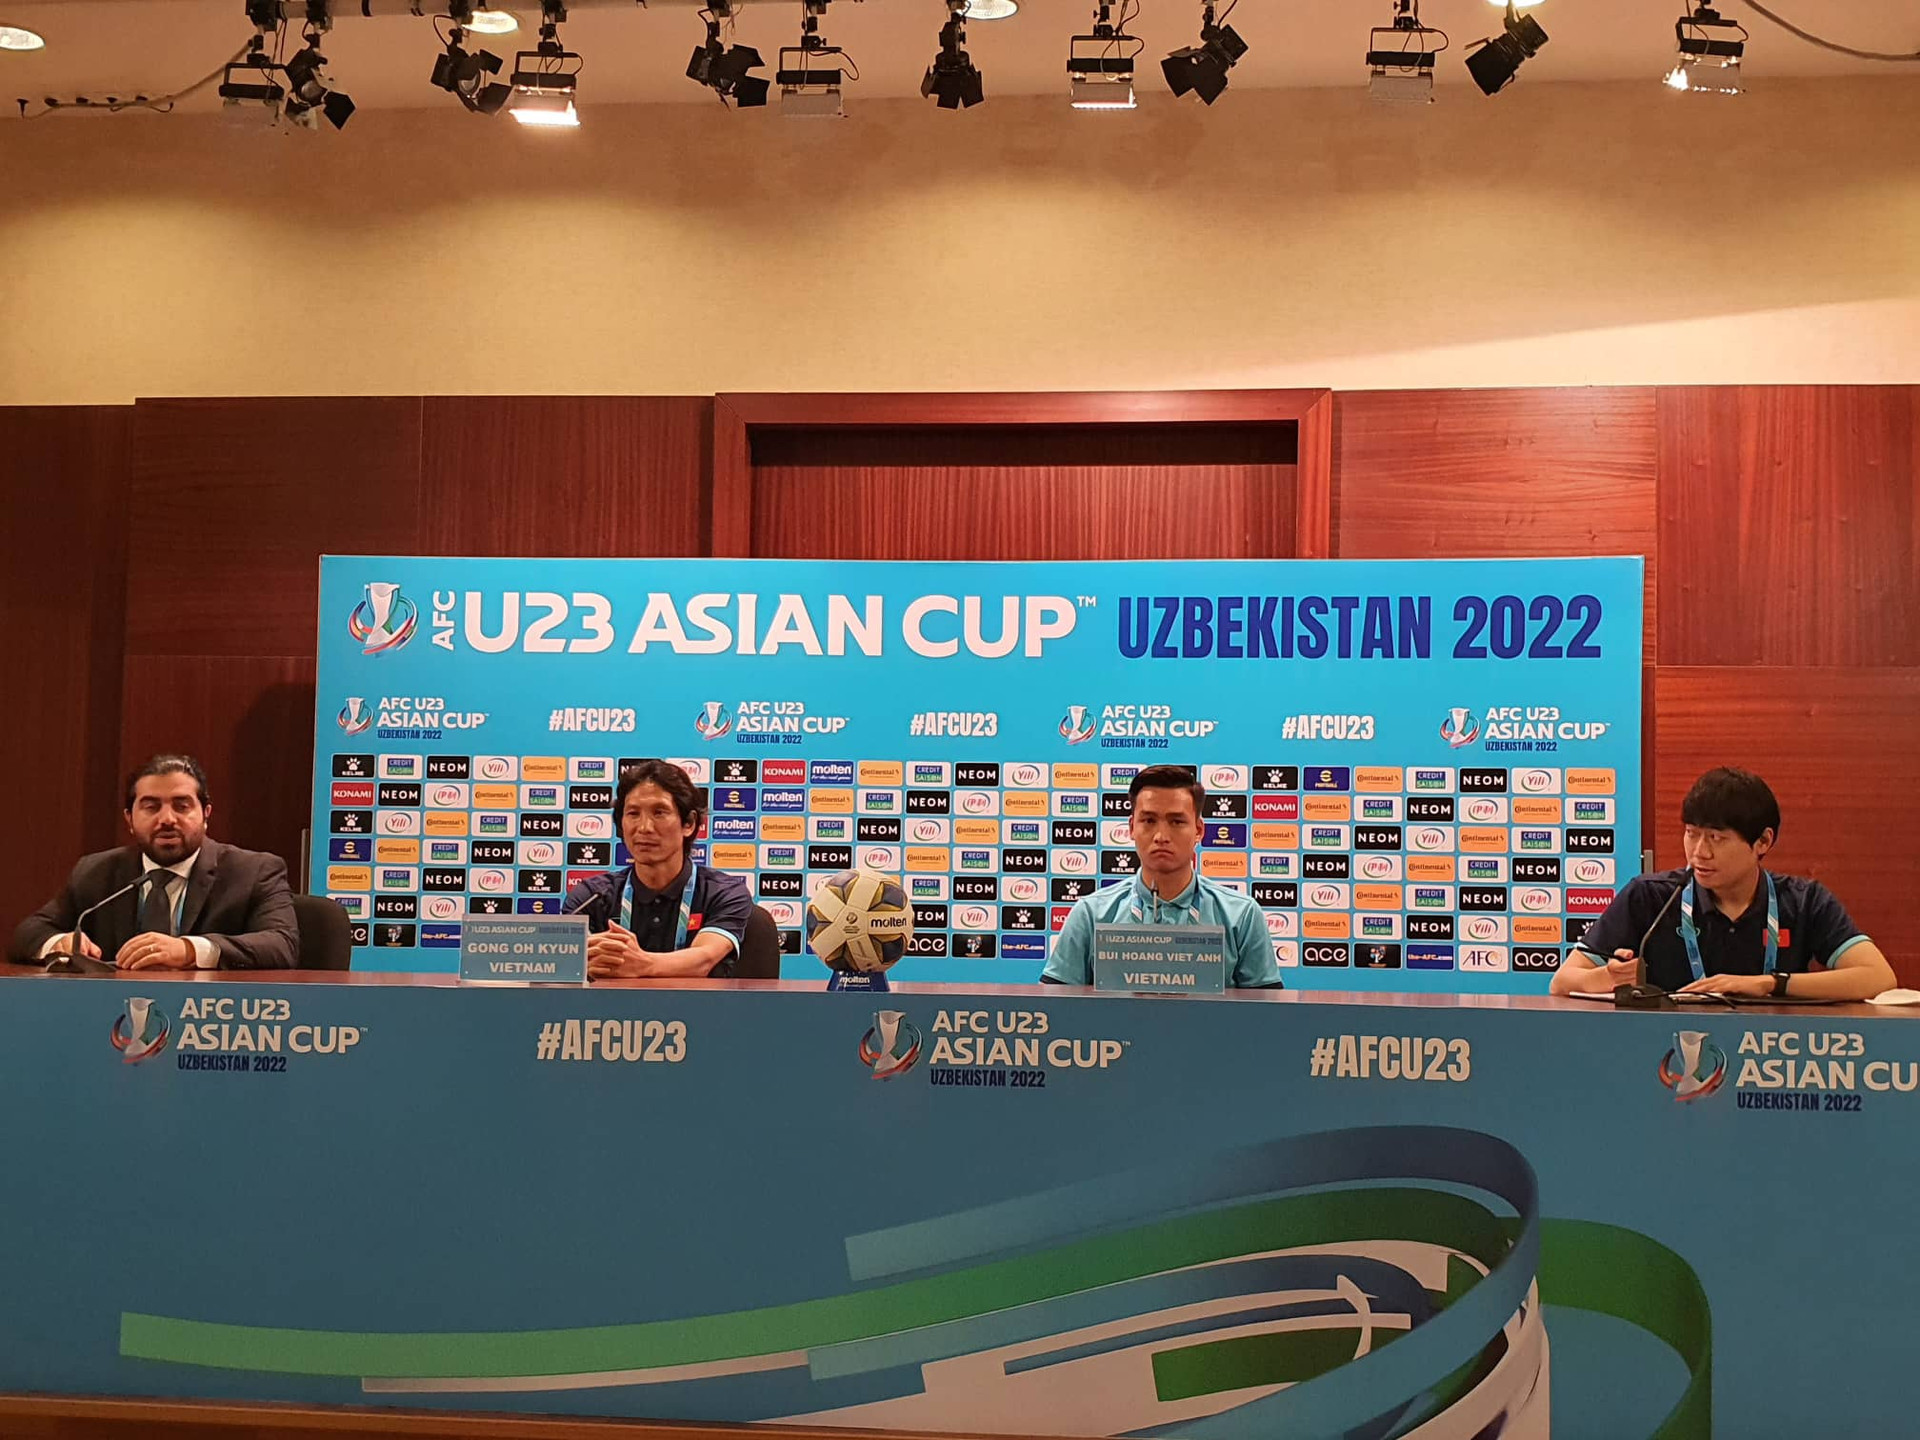 HLV Gong Oh Kyun: Chúng tôi không e ngại U23 Saudi Arabia - 1